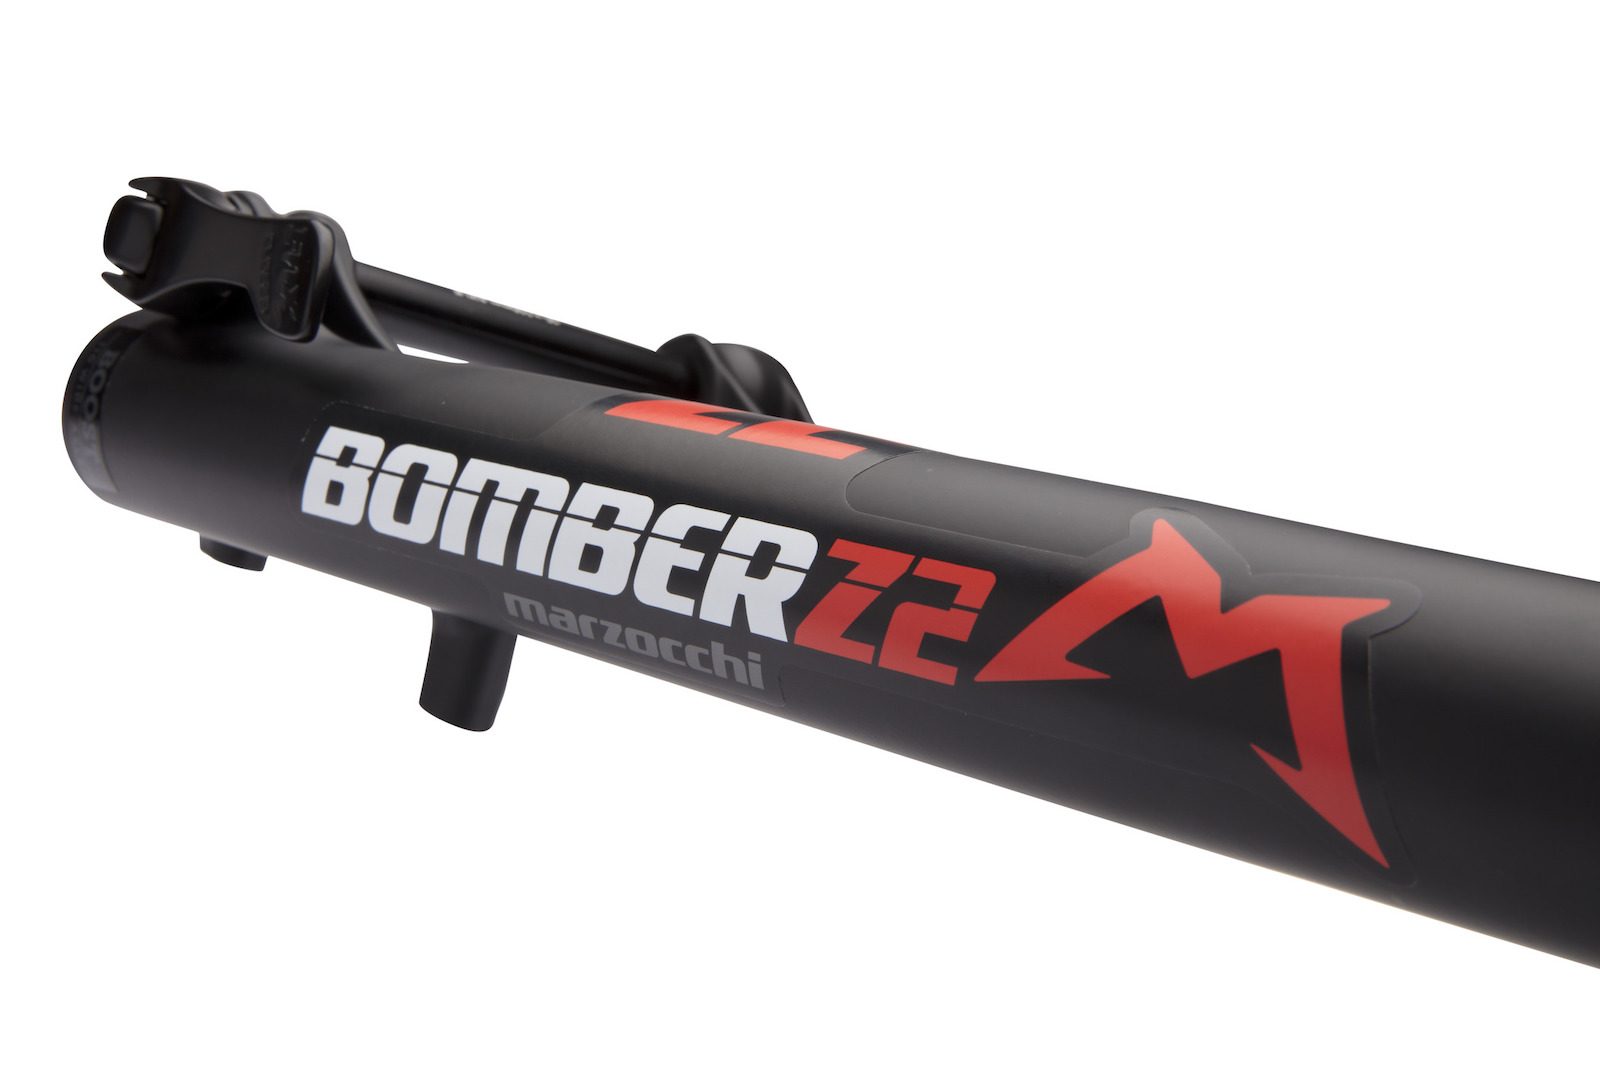 Bomber-Z2-detail-1-big-2100x2100-90b630a0-d74e-49c9-87ed-b04d8aa38be9-1600x1065.jpg